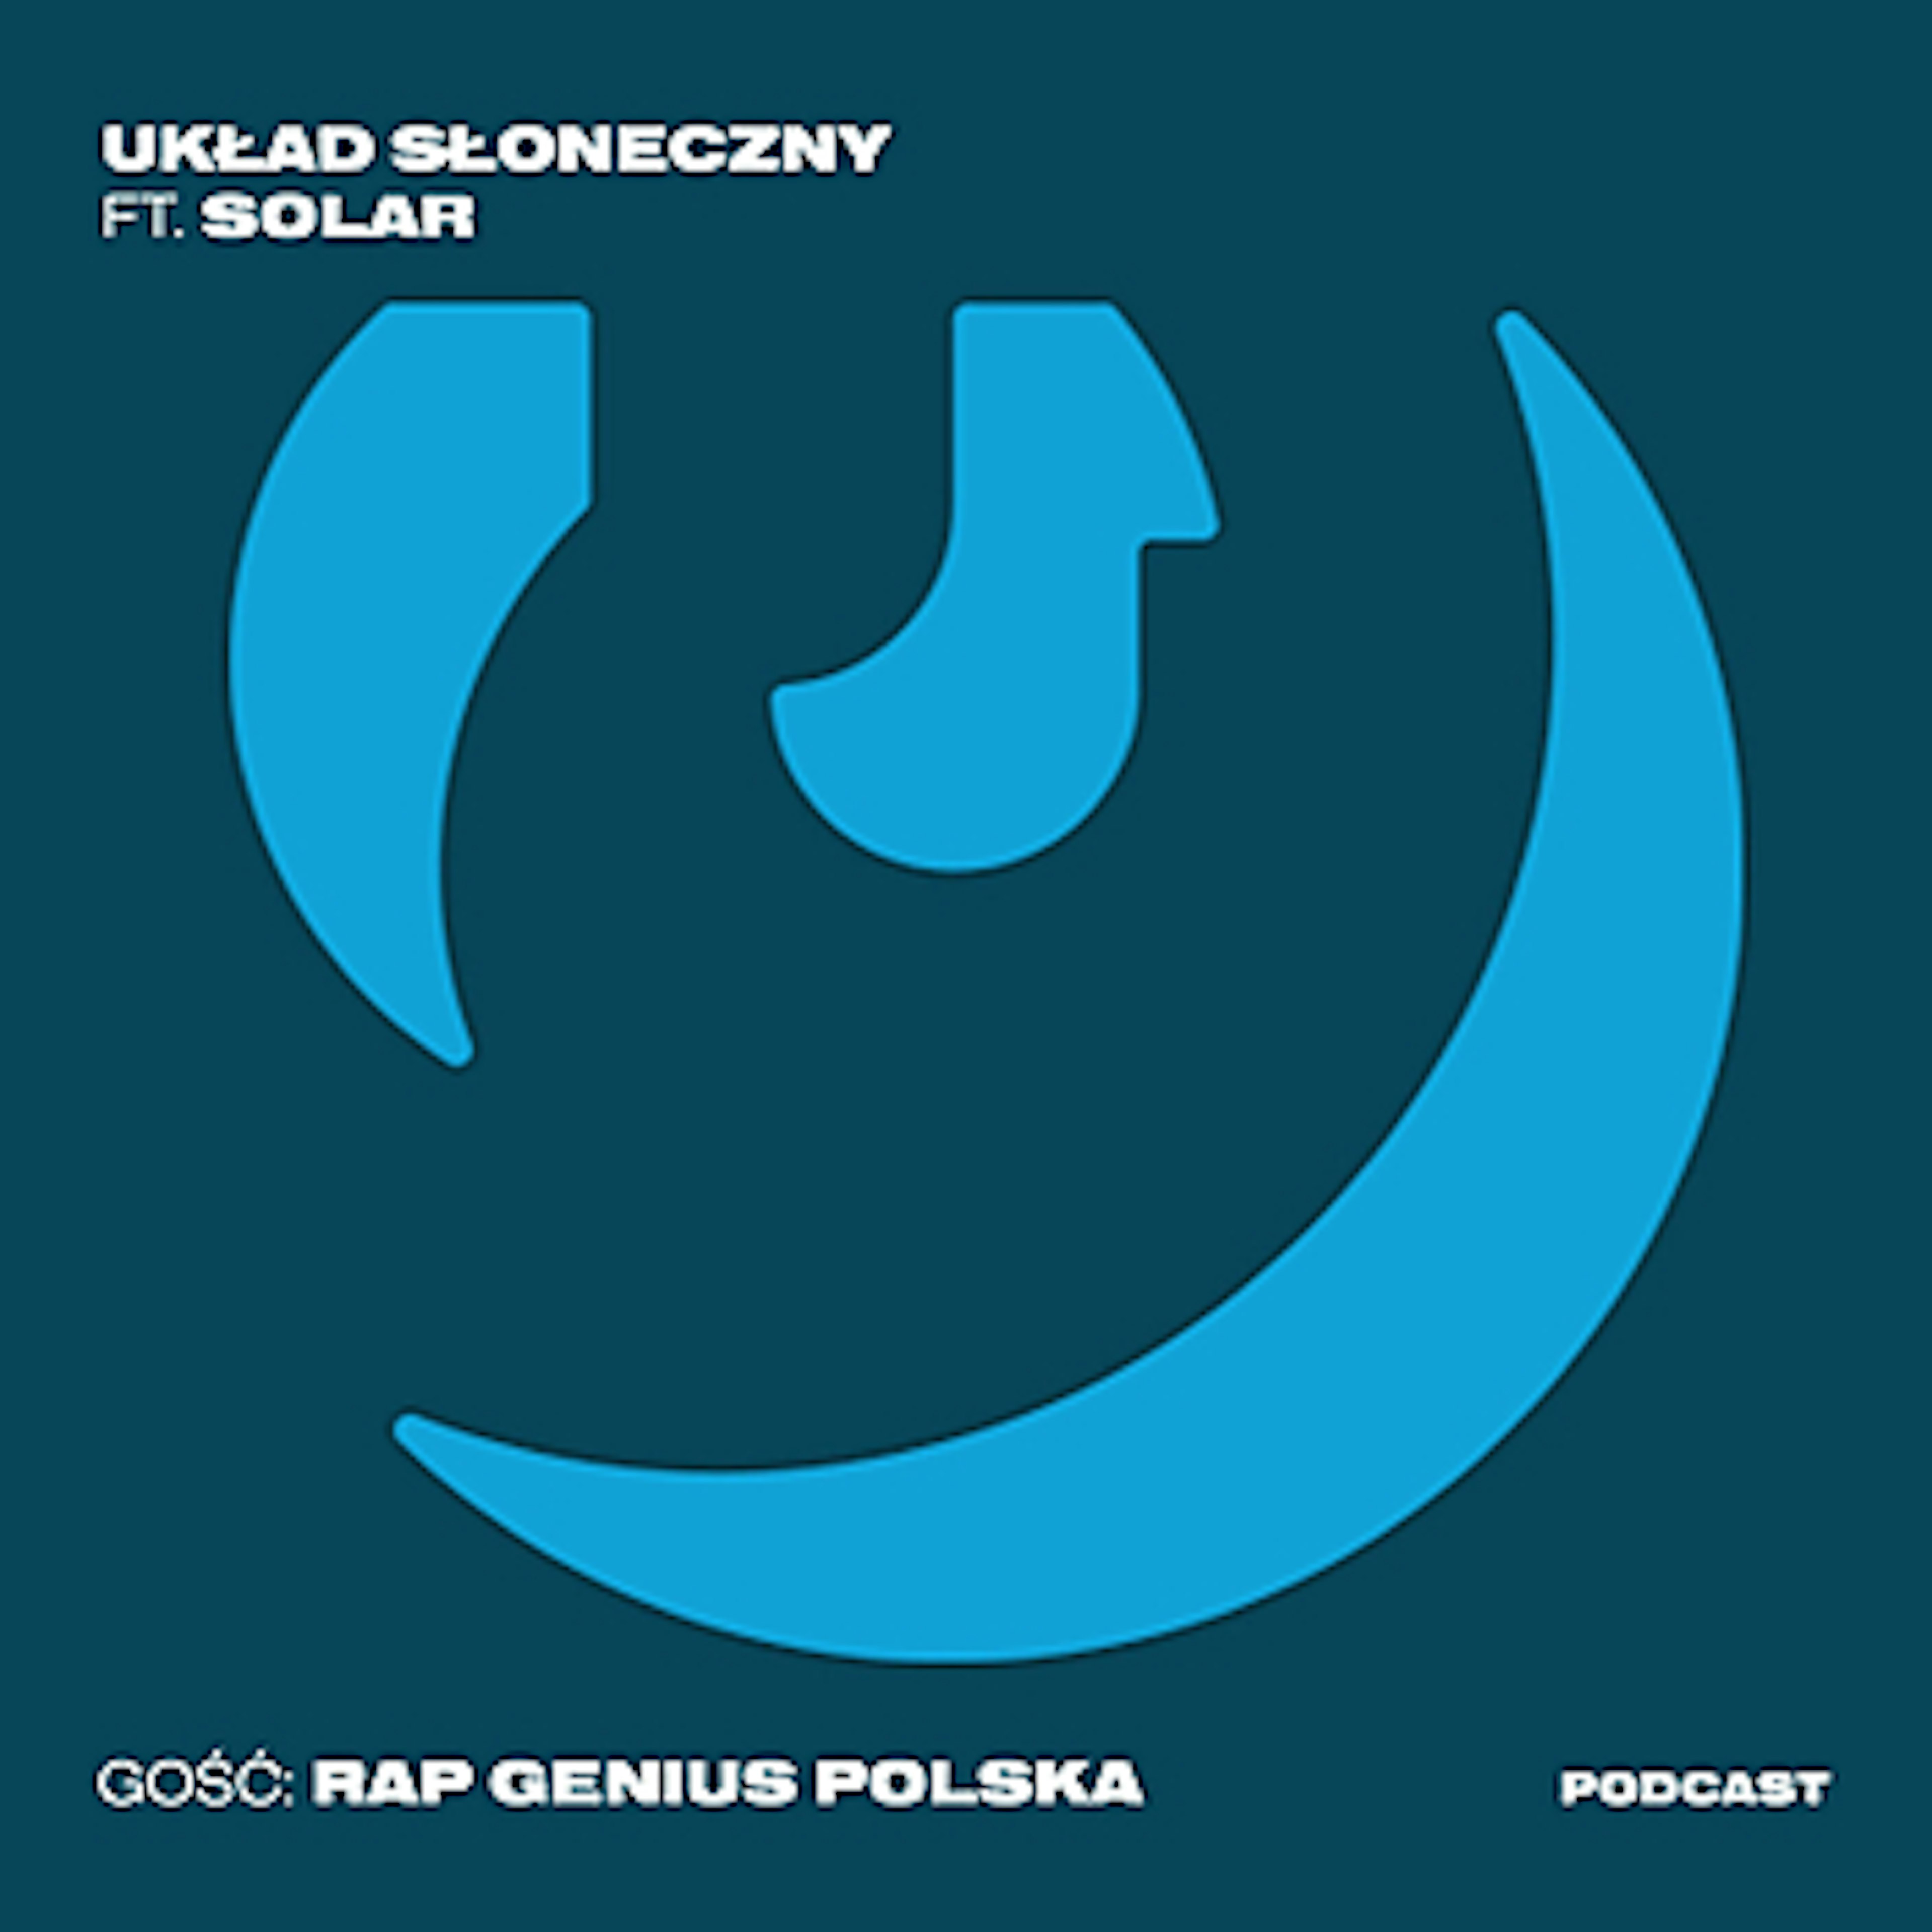 Układ Słoneczny - Analiza #hot16challenge2 z Solarem & Rap Genius Polska